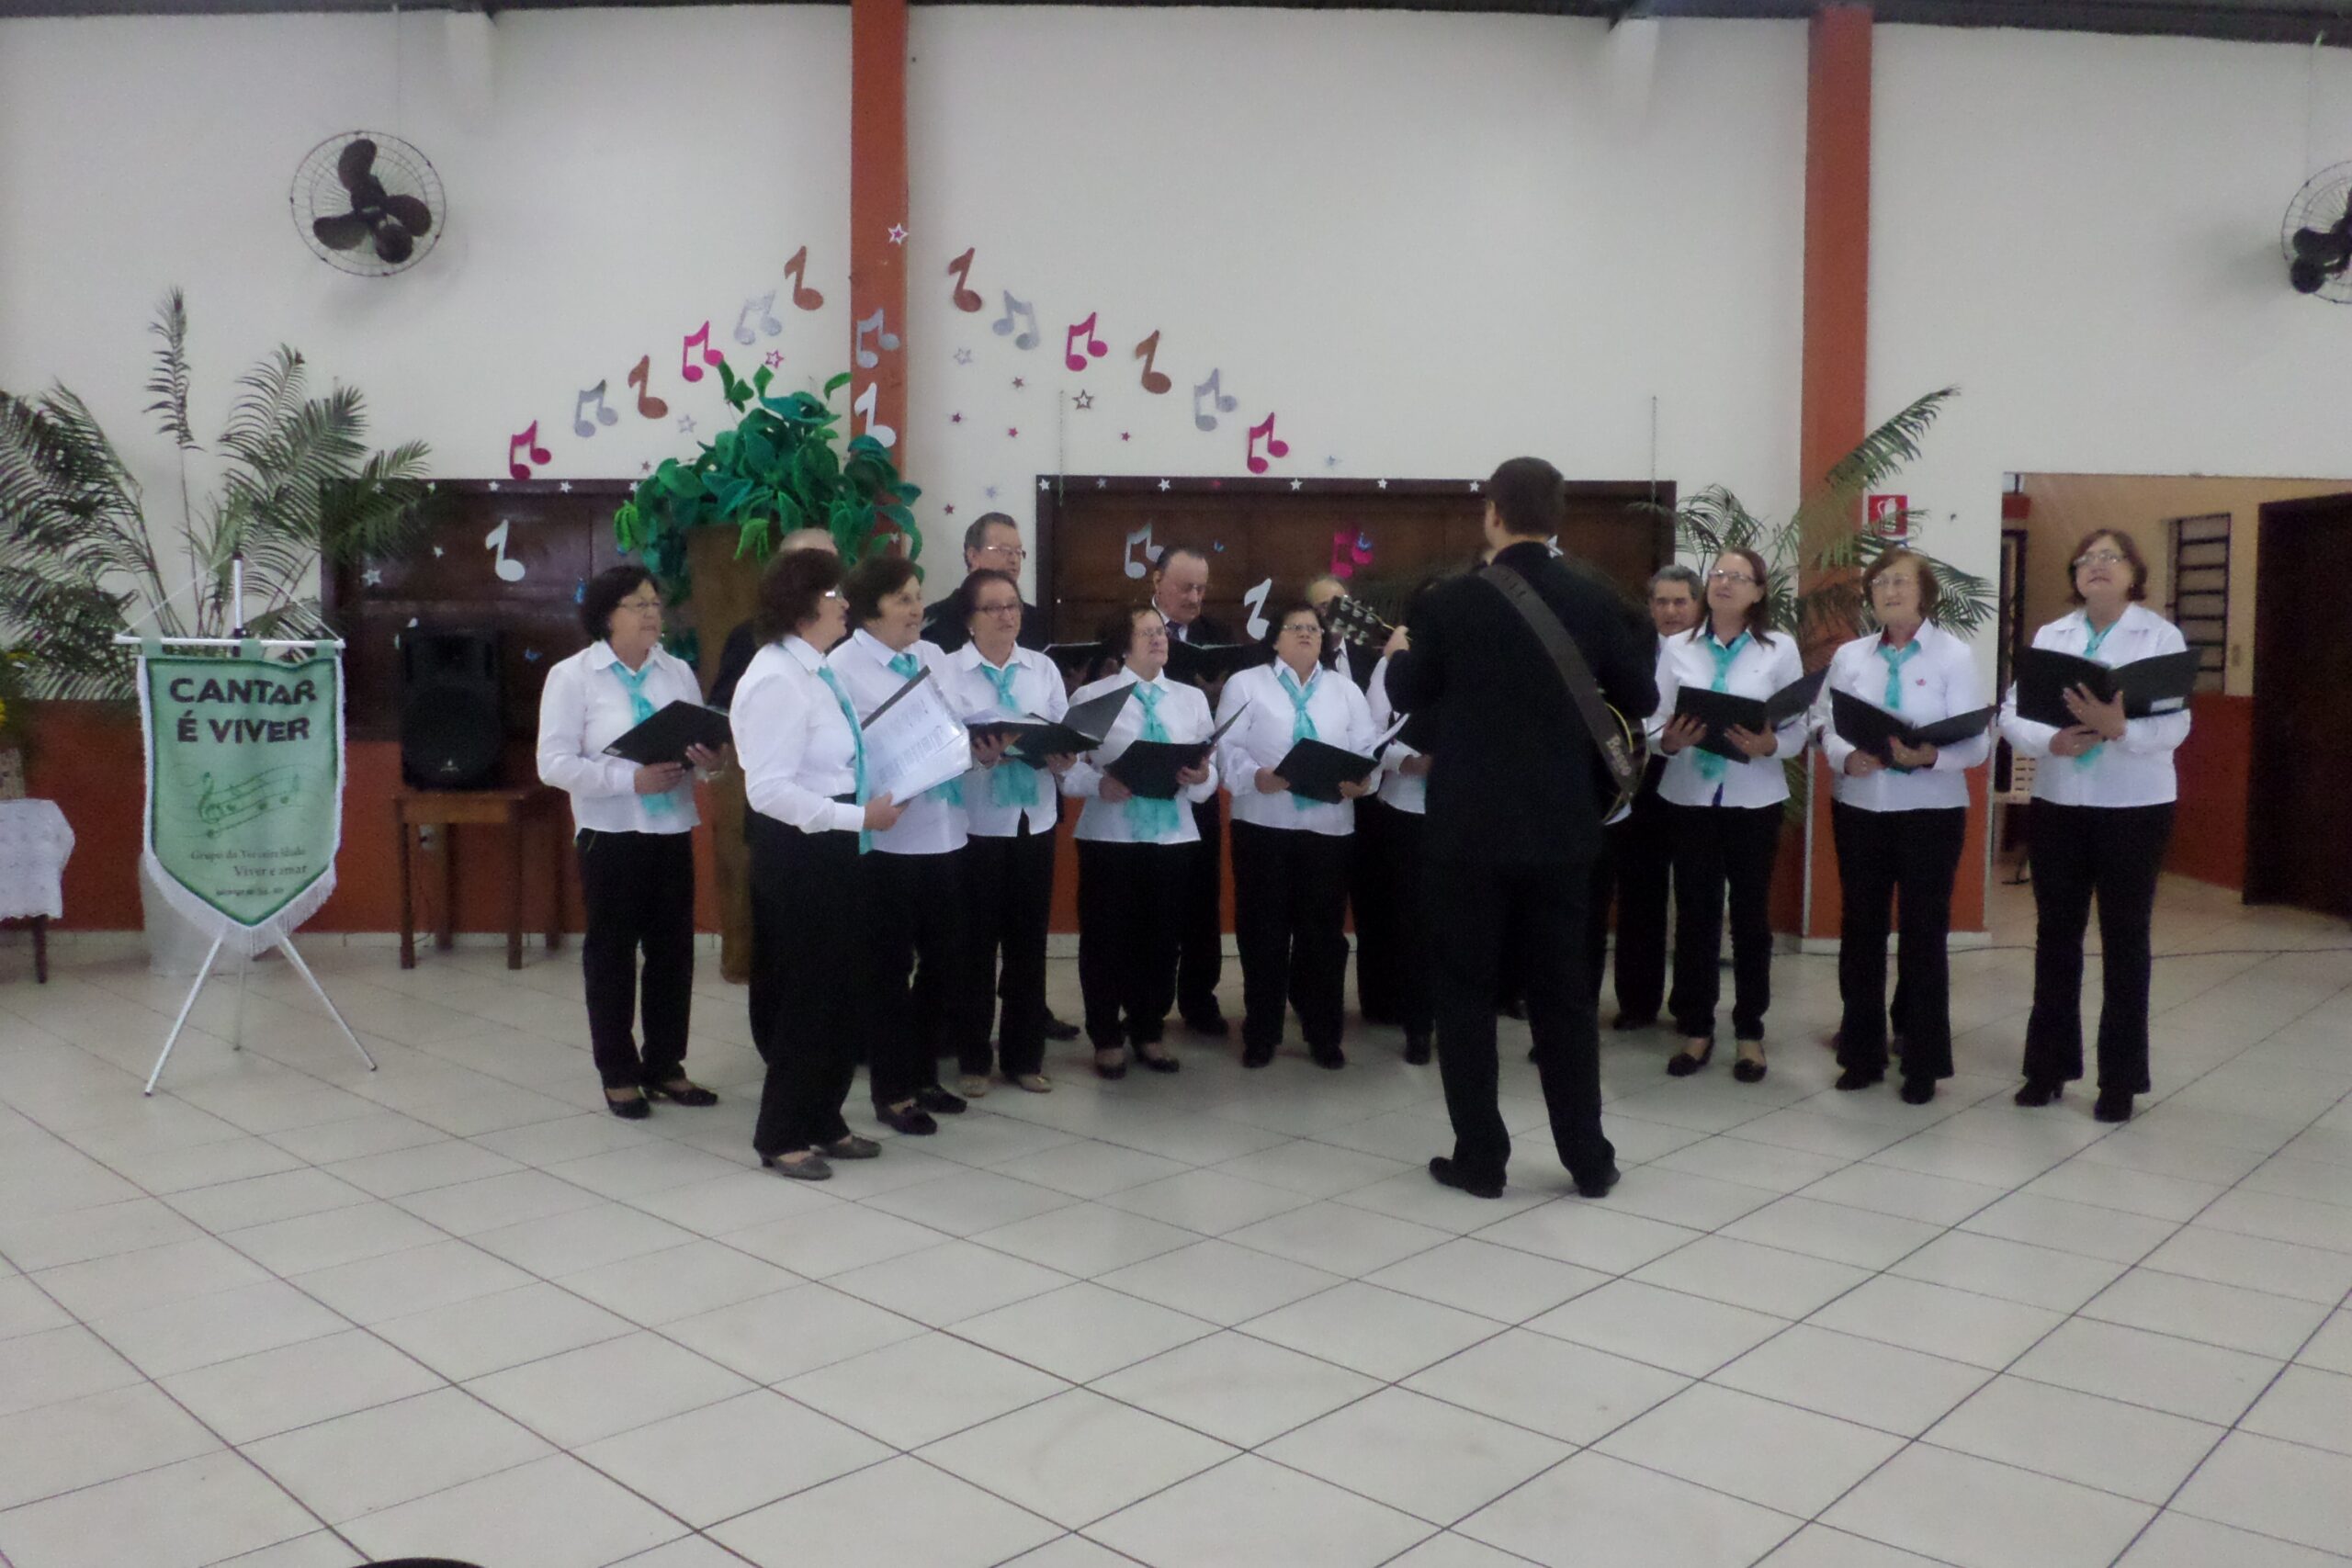 Grupo Cantar é Viver realiza apresentação em Tapejara